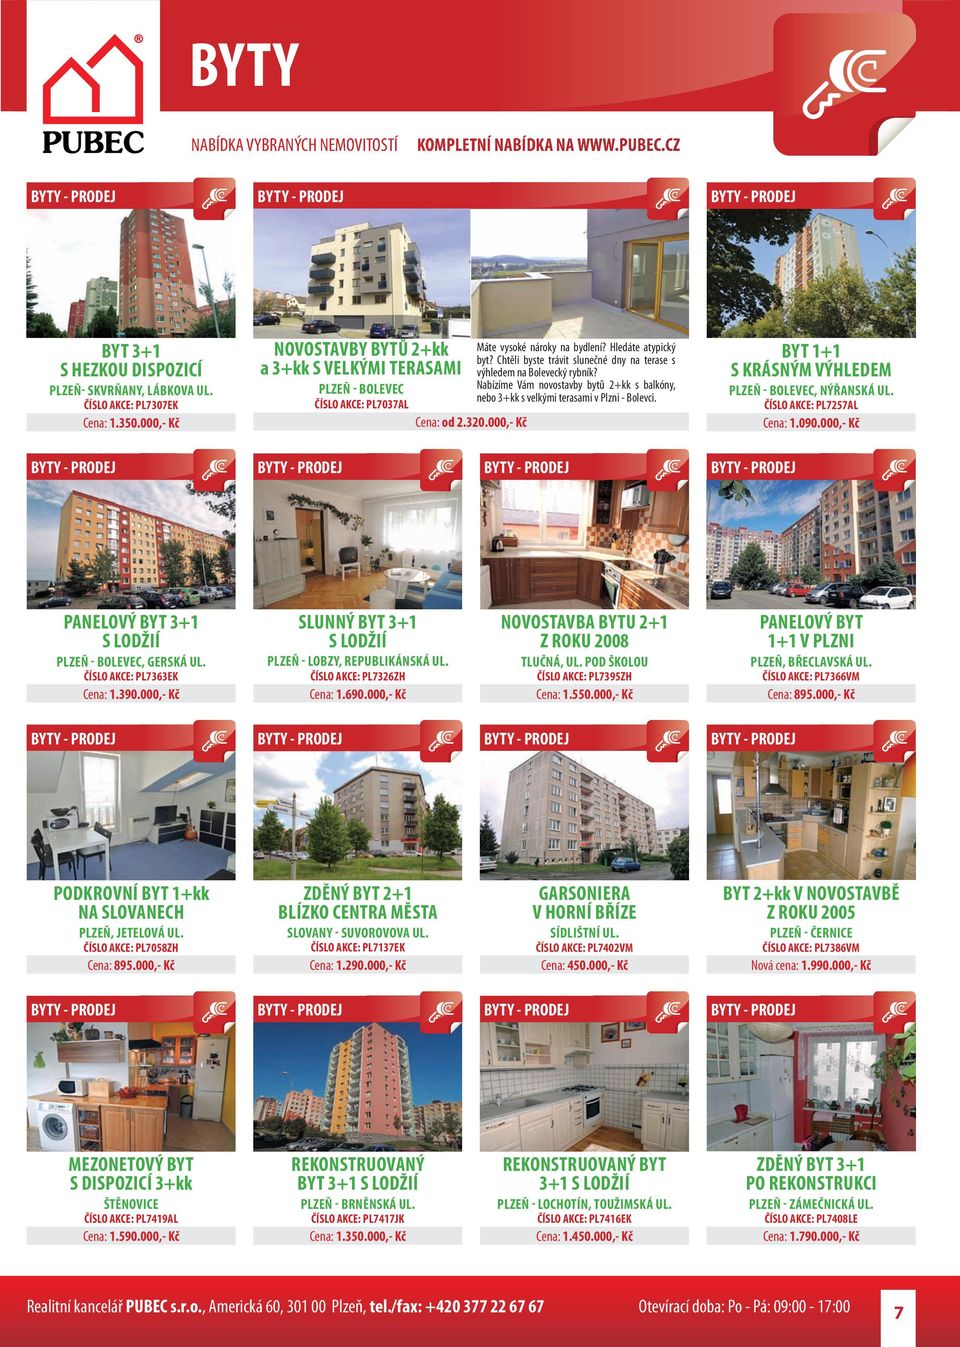 Nabízíme Vám novostavby bytů 2+kk s balkóny, nebo 3+kk s velkými terasami v Plzni - Bolevci. BYT 1+1 S KRÁSNÝM VÝHLEDEM PLZEŇ - BOLEVEC, NÝŘANSKÁ UL. ČÍSLO AKCE: PL7257AL Cena: 1.090.